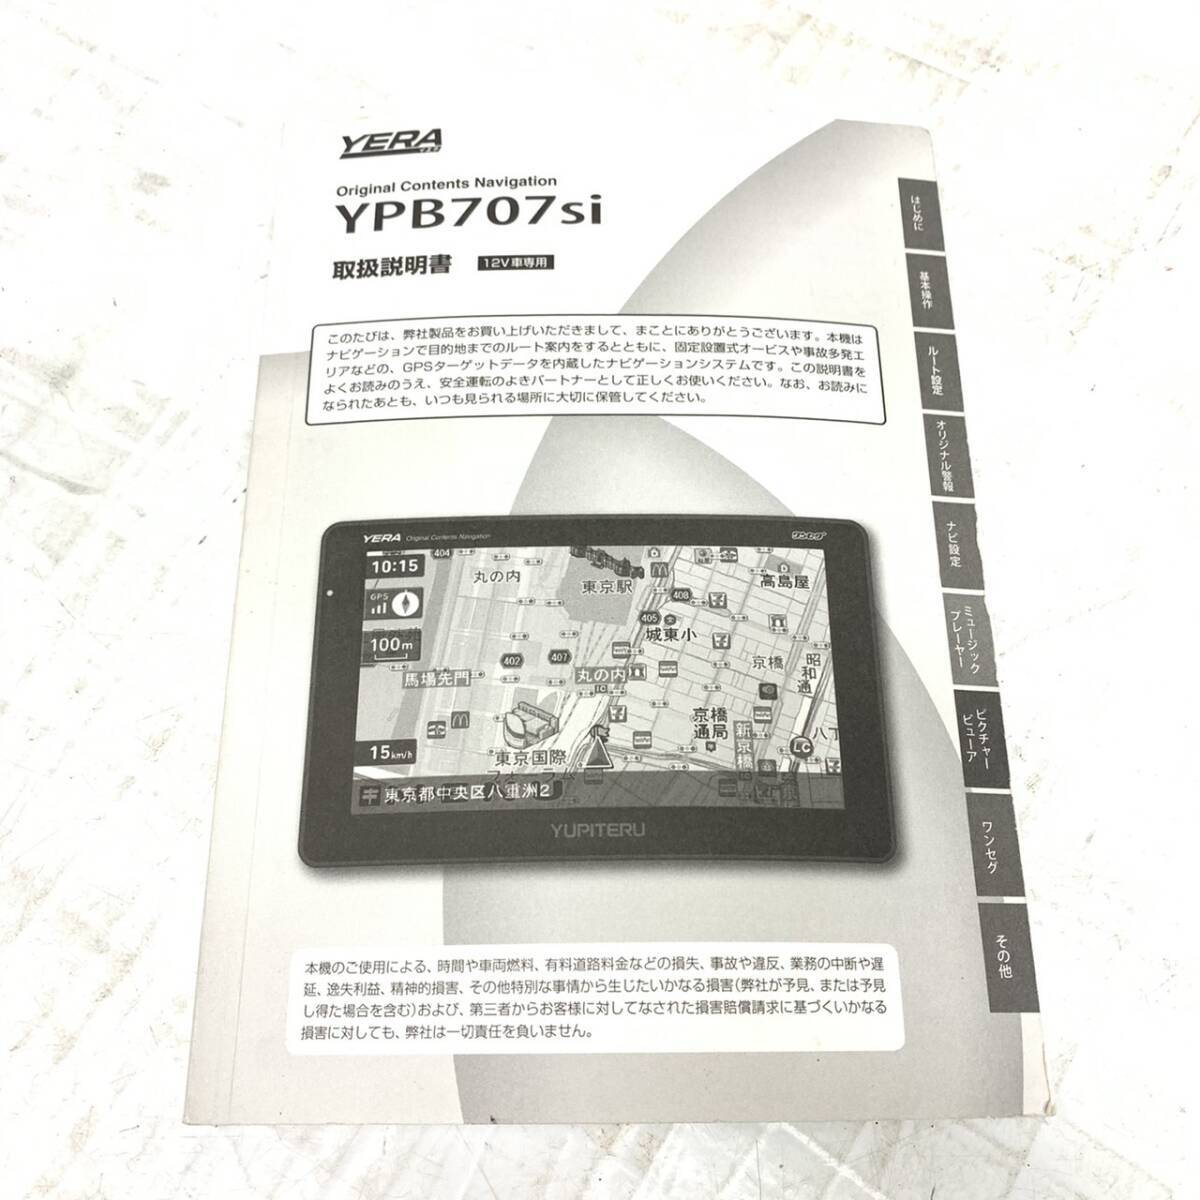 美品 送料無料 ユピテル YERA 7V型 YPB707si ワンセグ内蔵 予備シガレットケーブル 箱 説明書付きの画像7